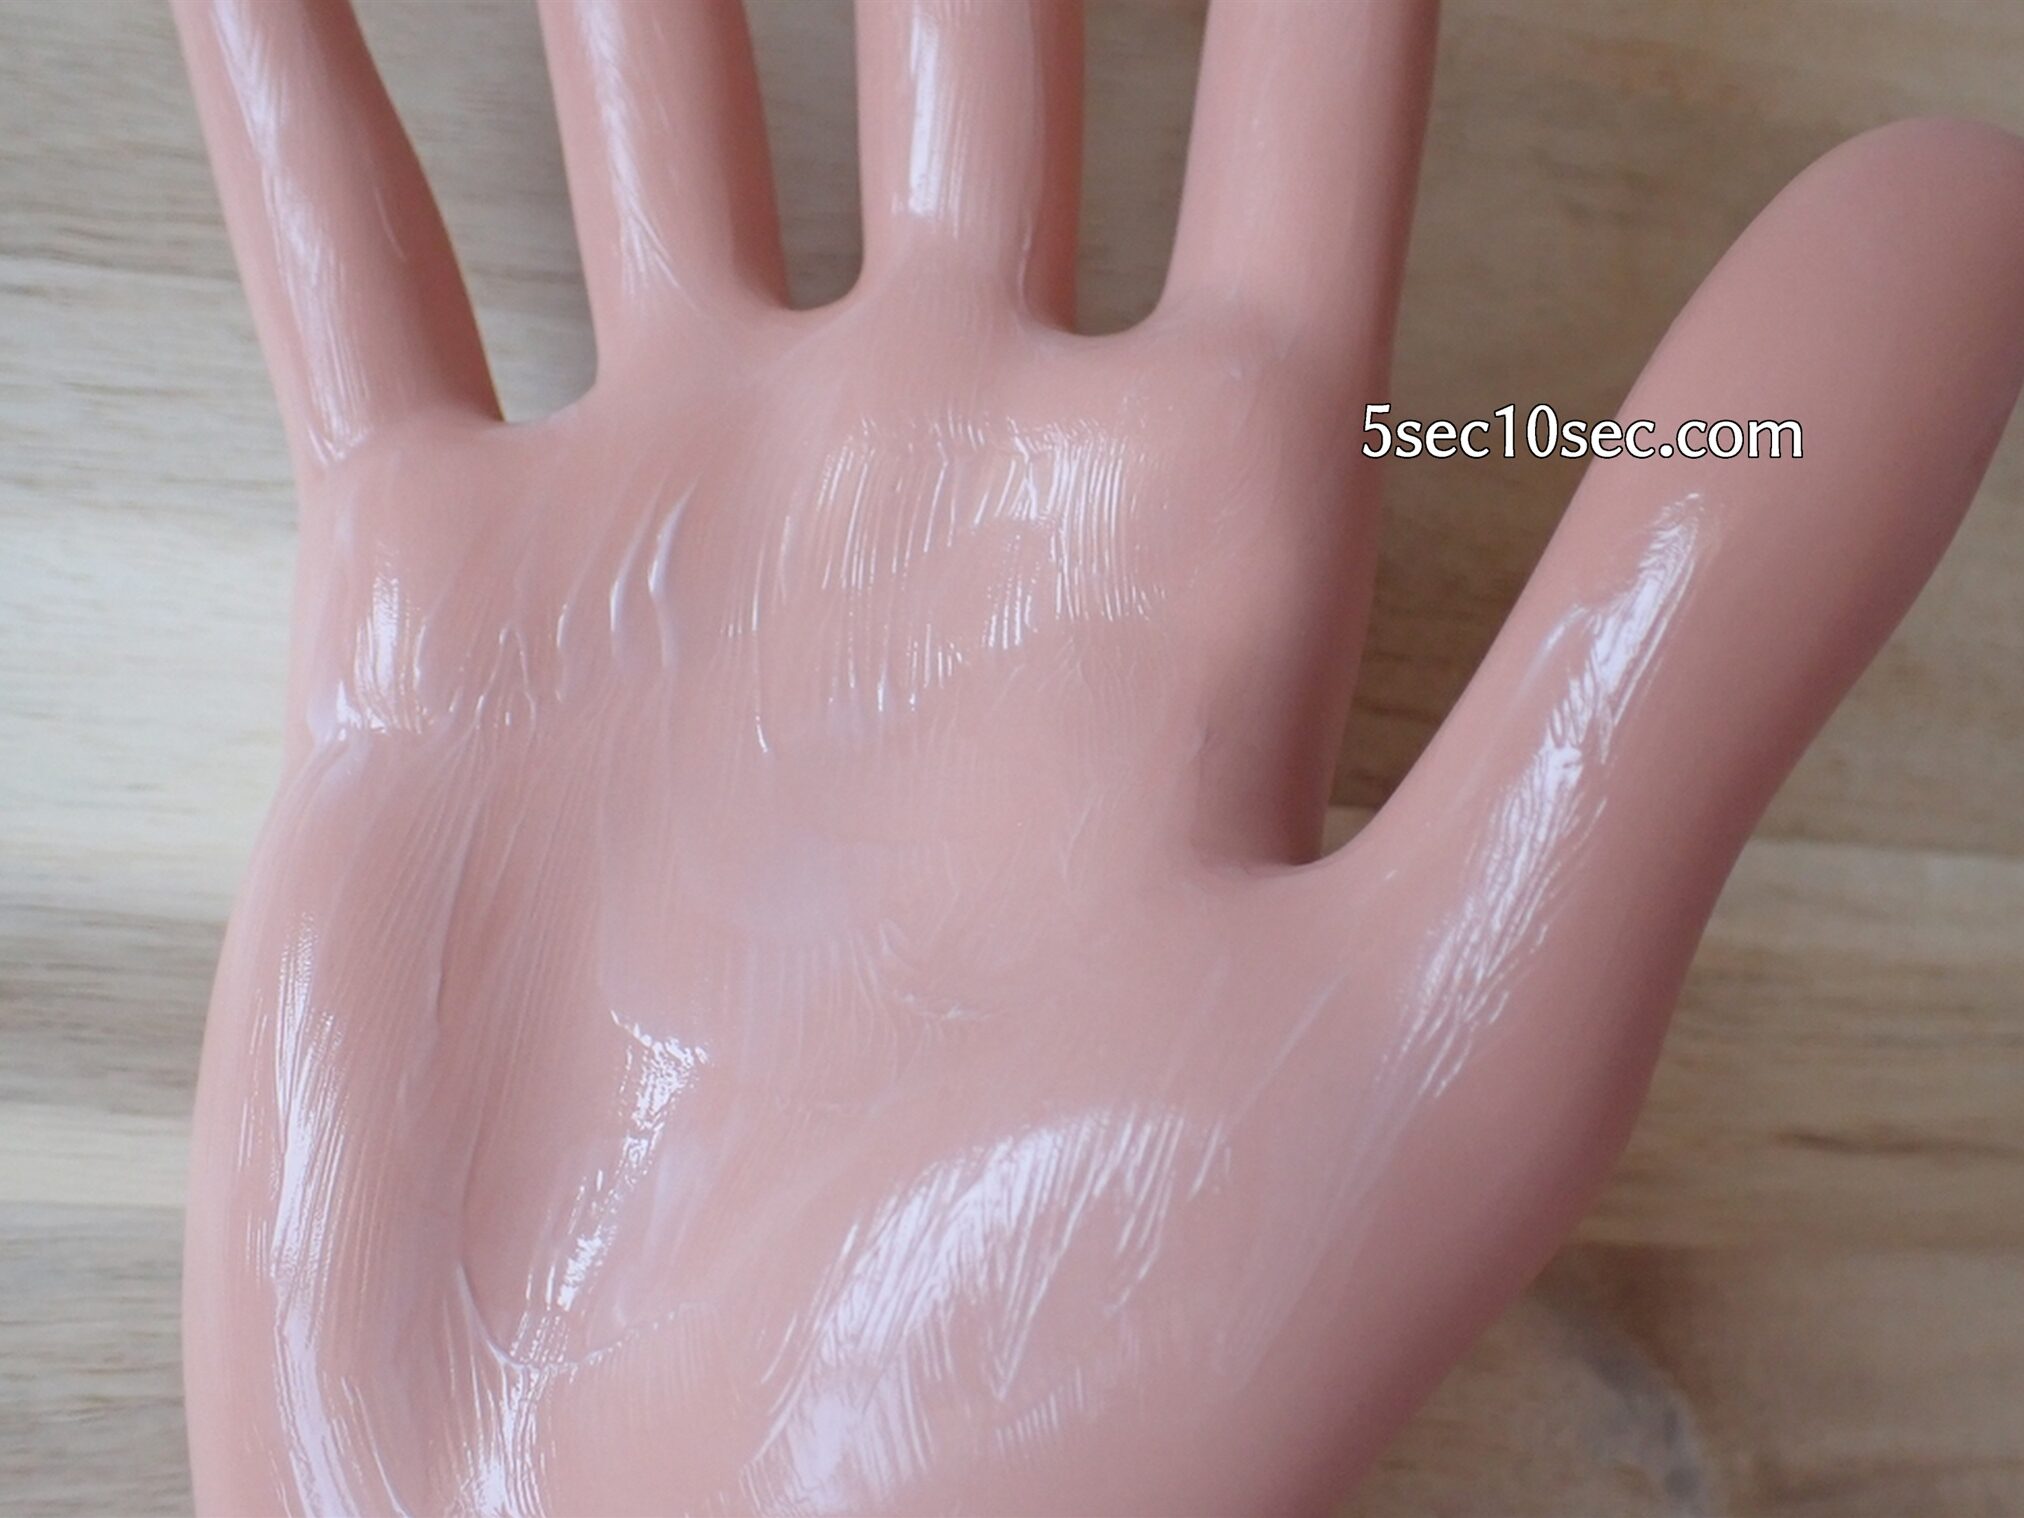 Coyoriトライアルセット 14日間ハリツヤ体験セット 株式会社JIMOS　濃密美容クリーム　使い方は手のひらに馴染ませてから顔を包むようにして馴染ませて使います